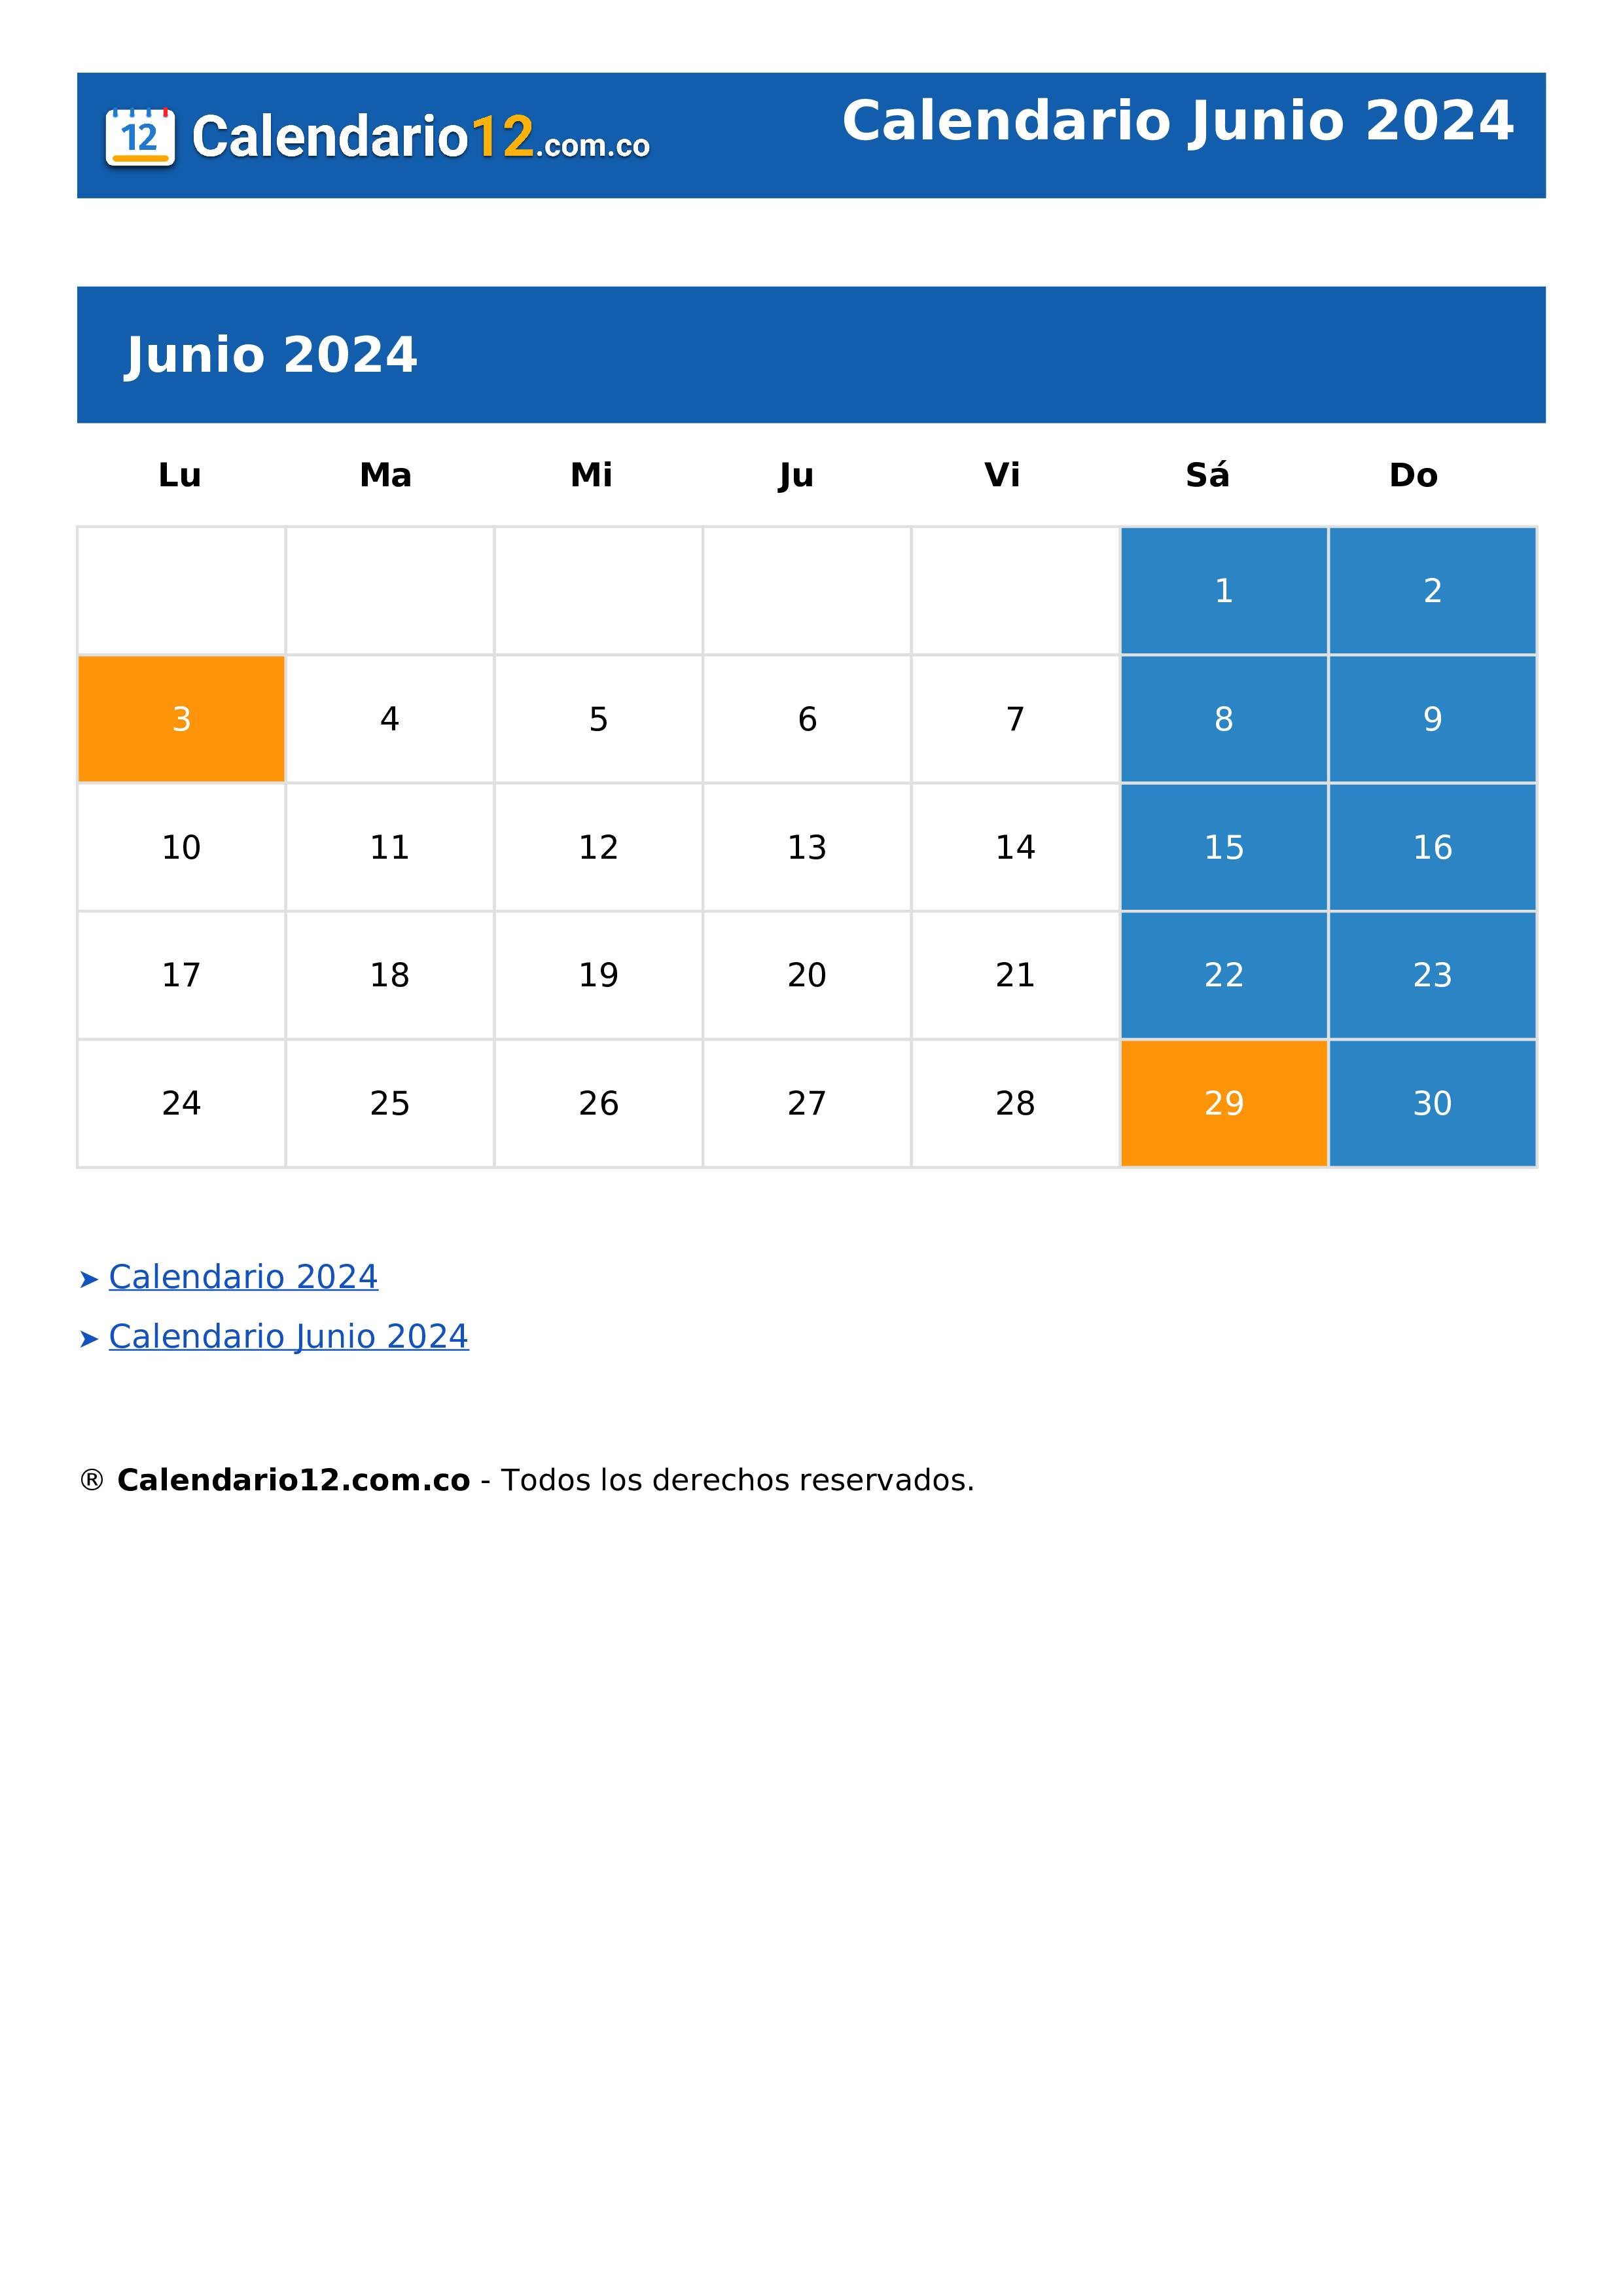 Calendario Junio 2024